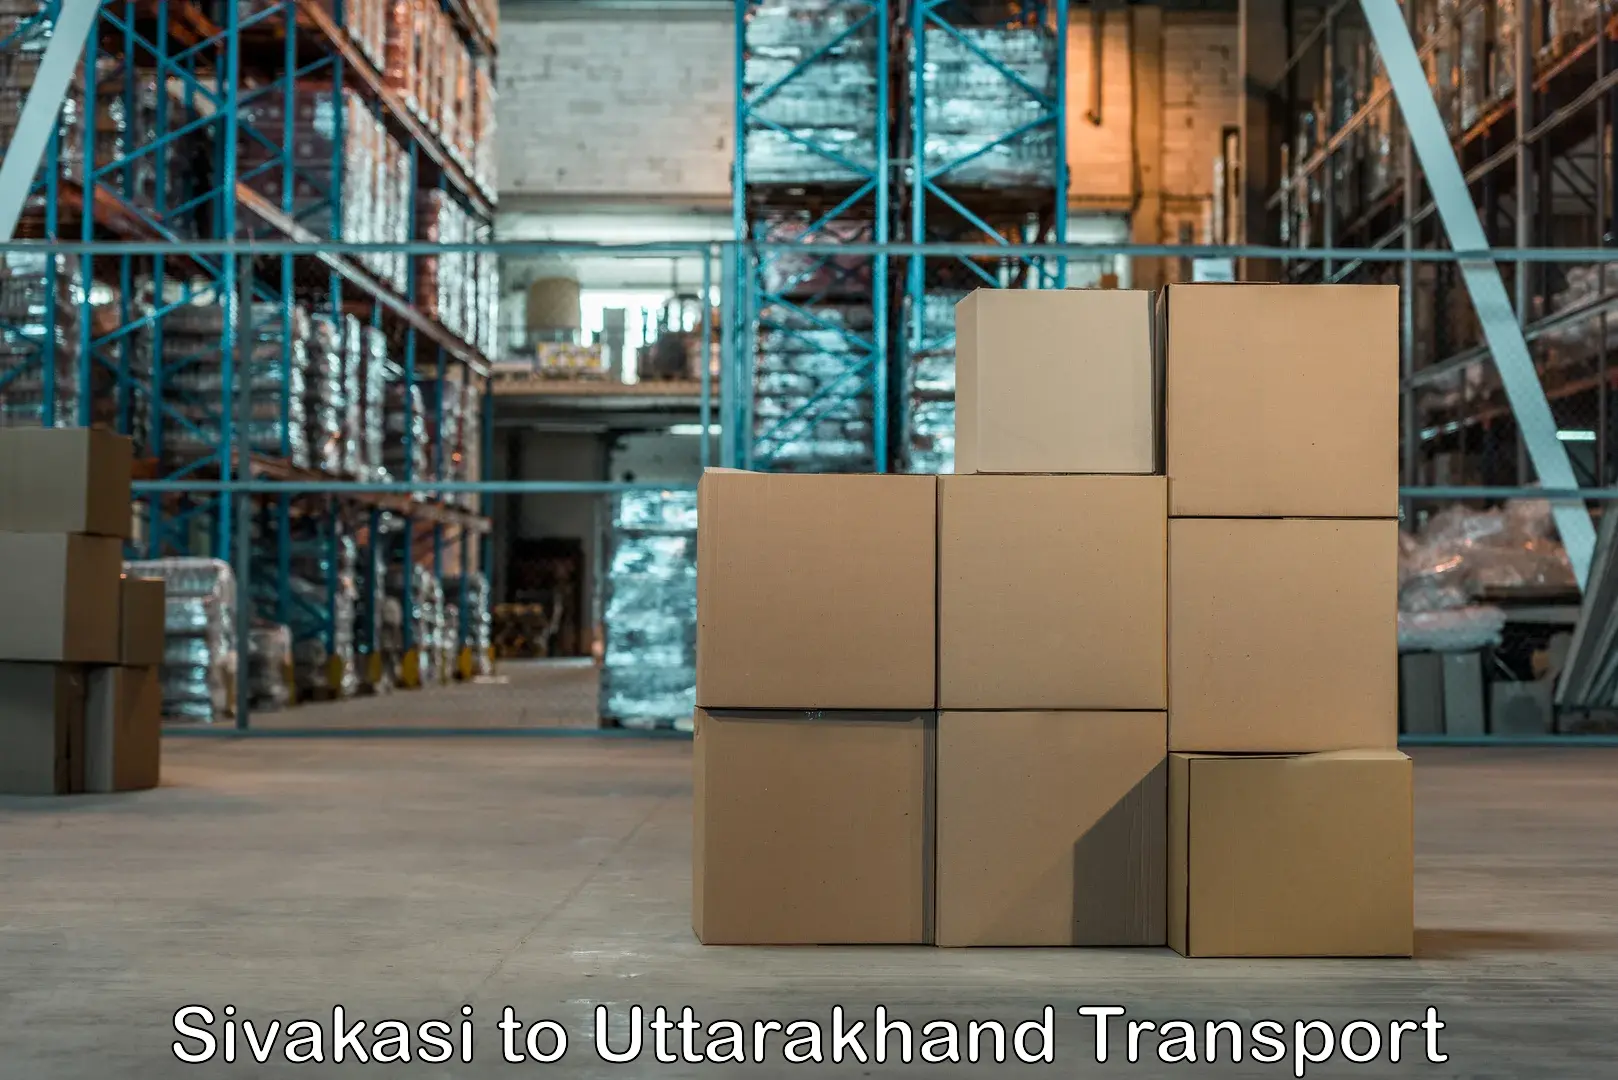 Nearest transport service Sivakasi to Uttarakhand